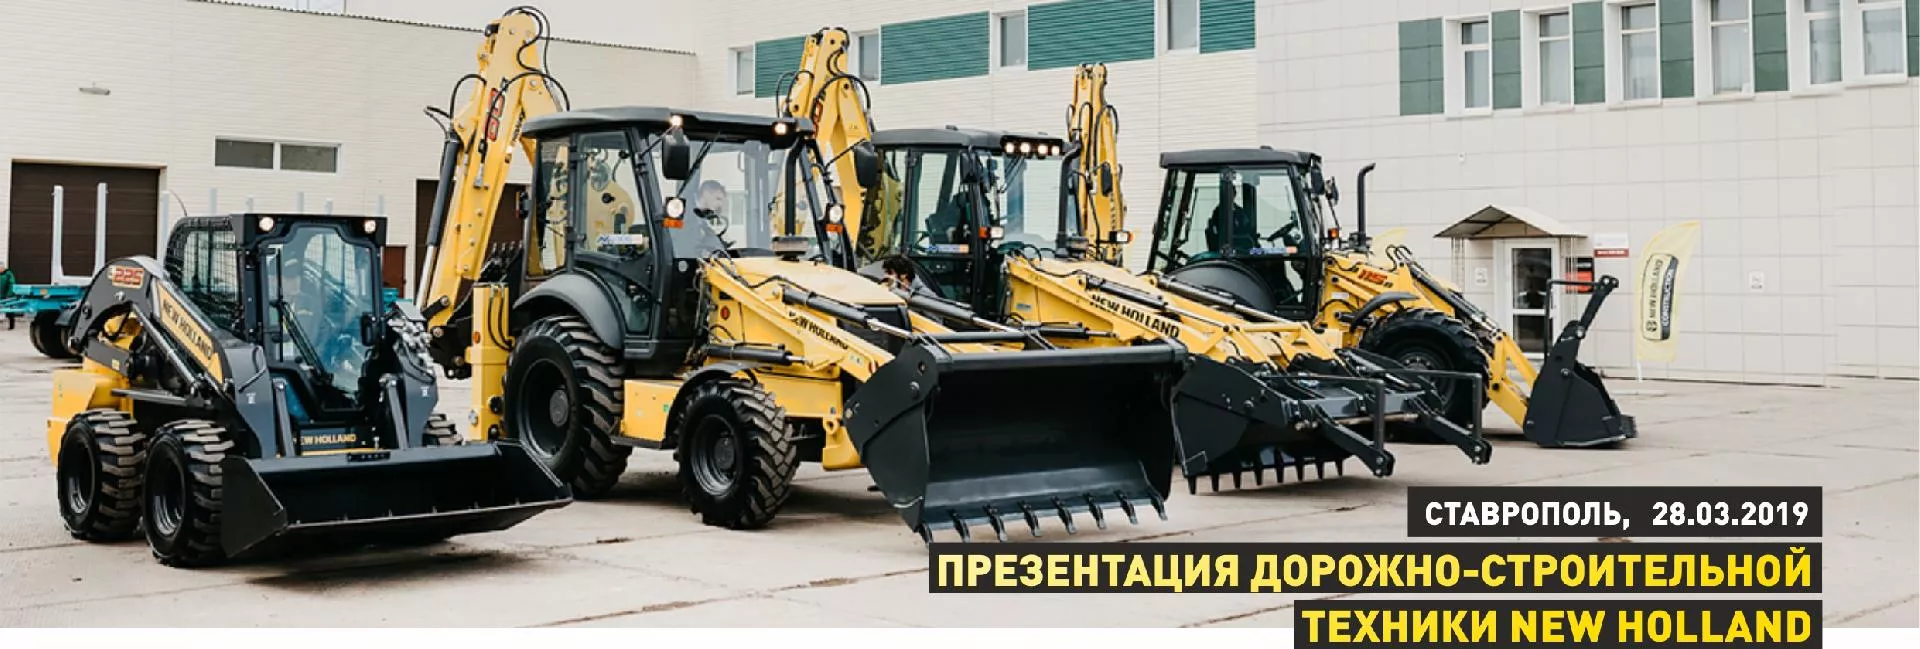 Изображение к статье «Презентация дорожно-строительной техники New Holland, Ставрополь, 28.03.2019»